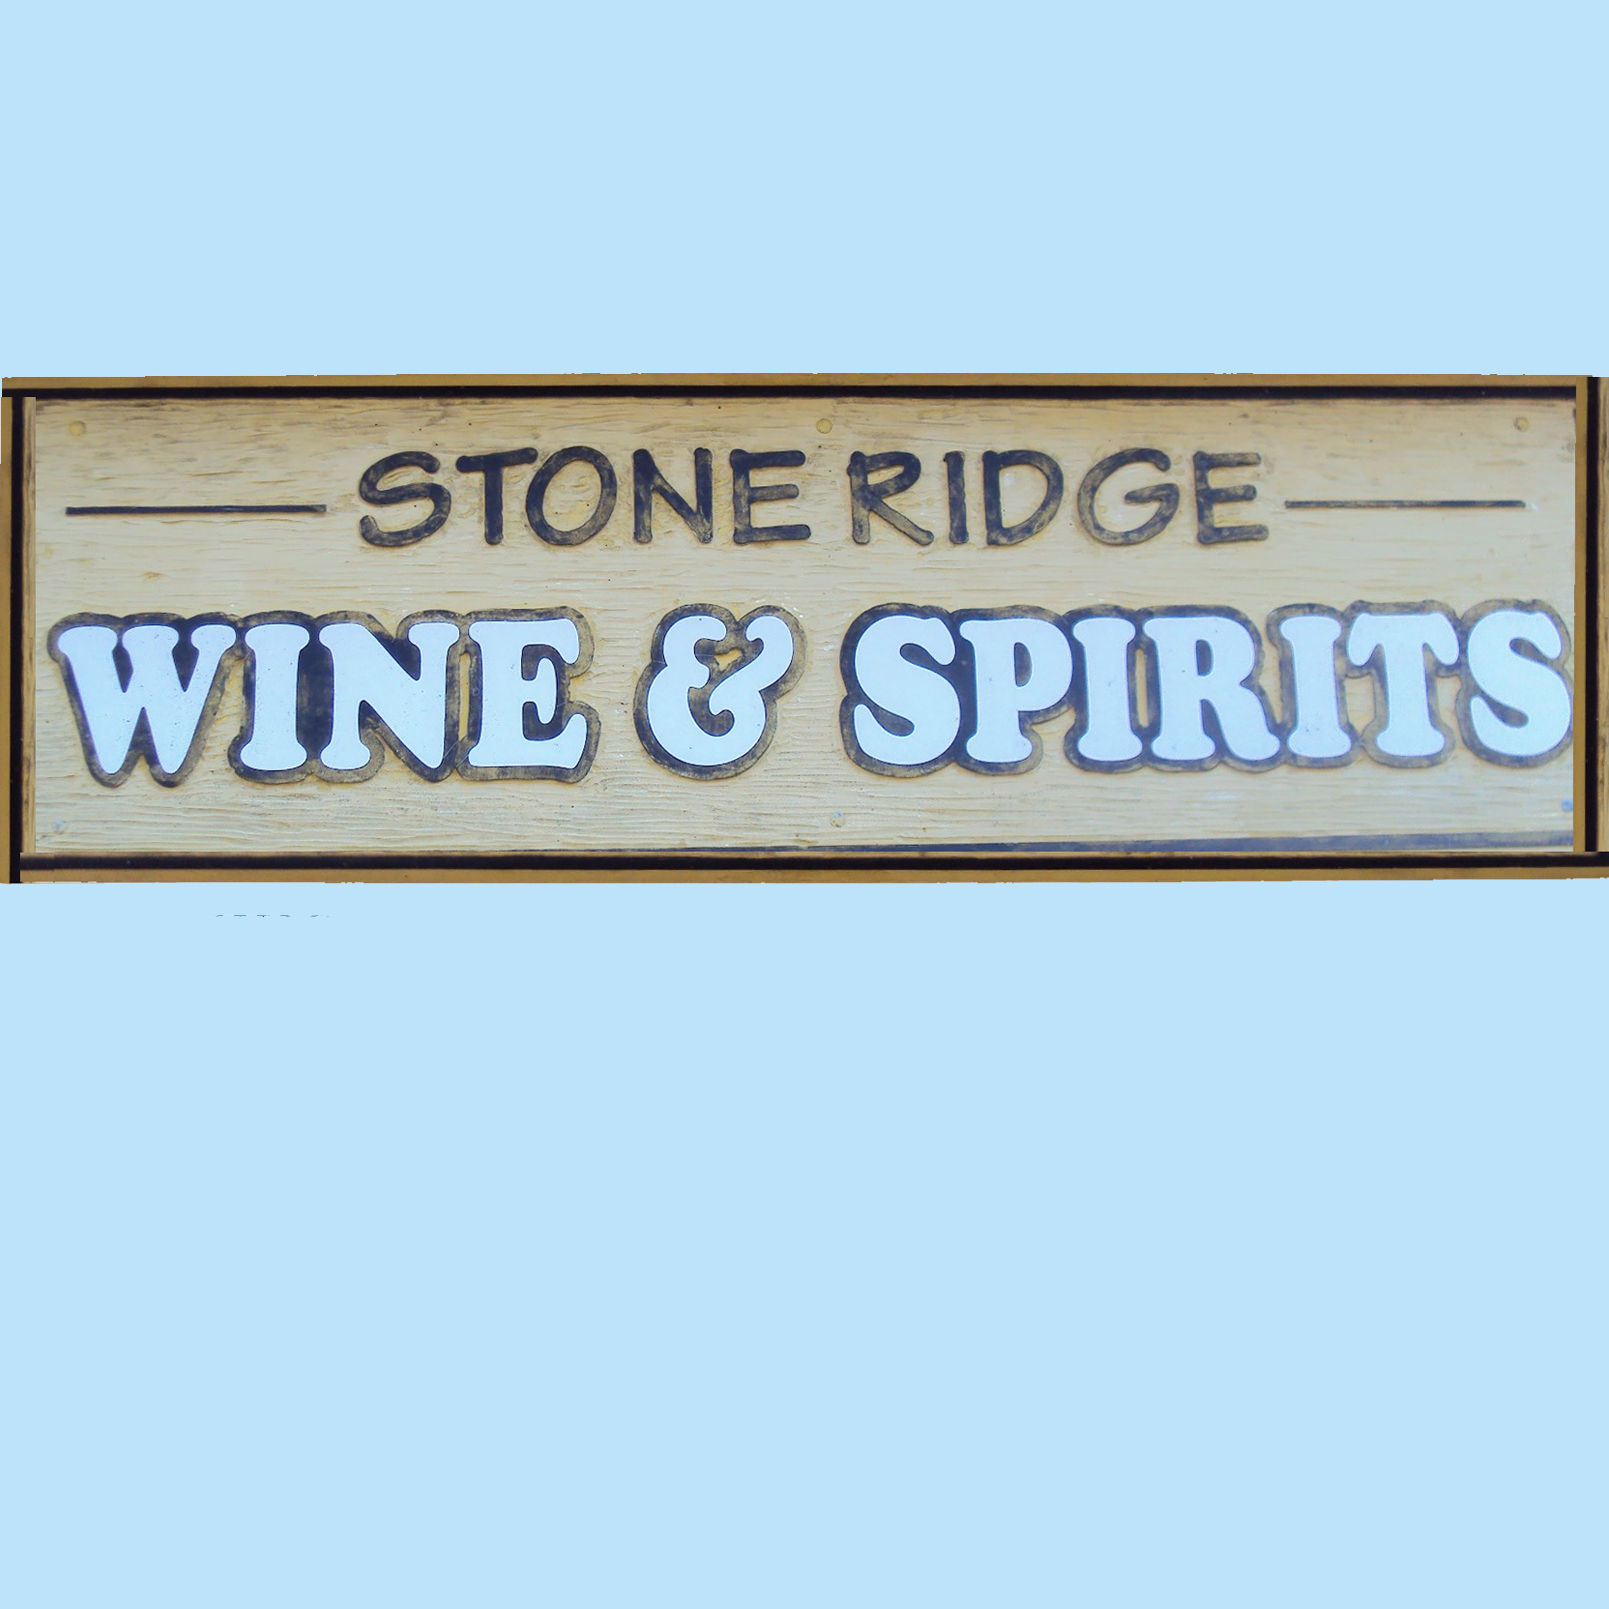 Stone Ridge Wines & Spirits